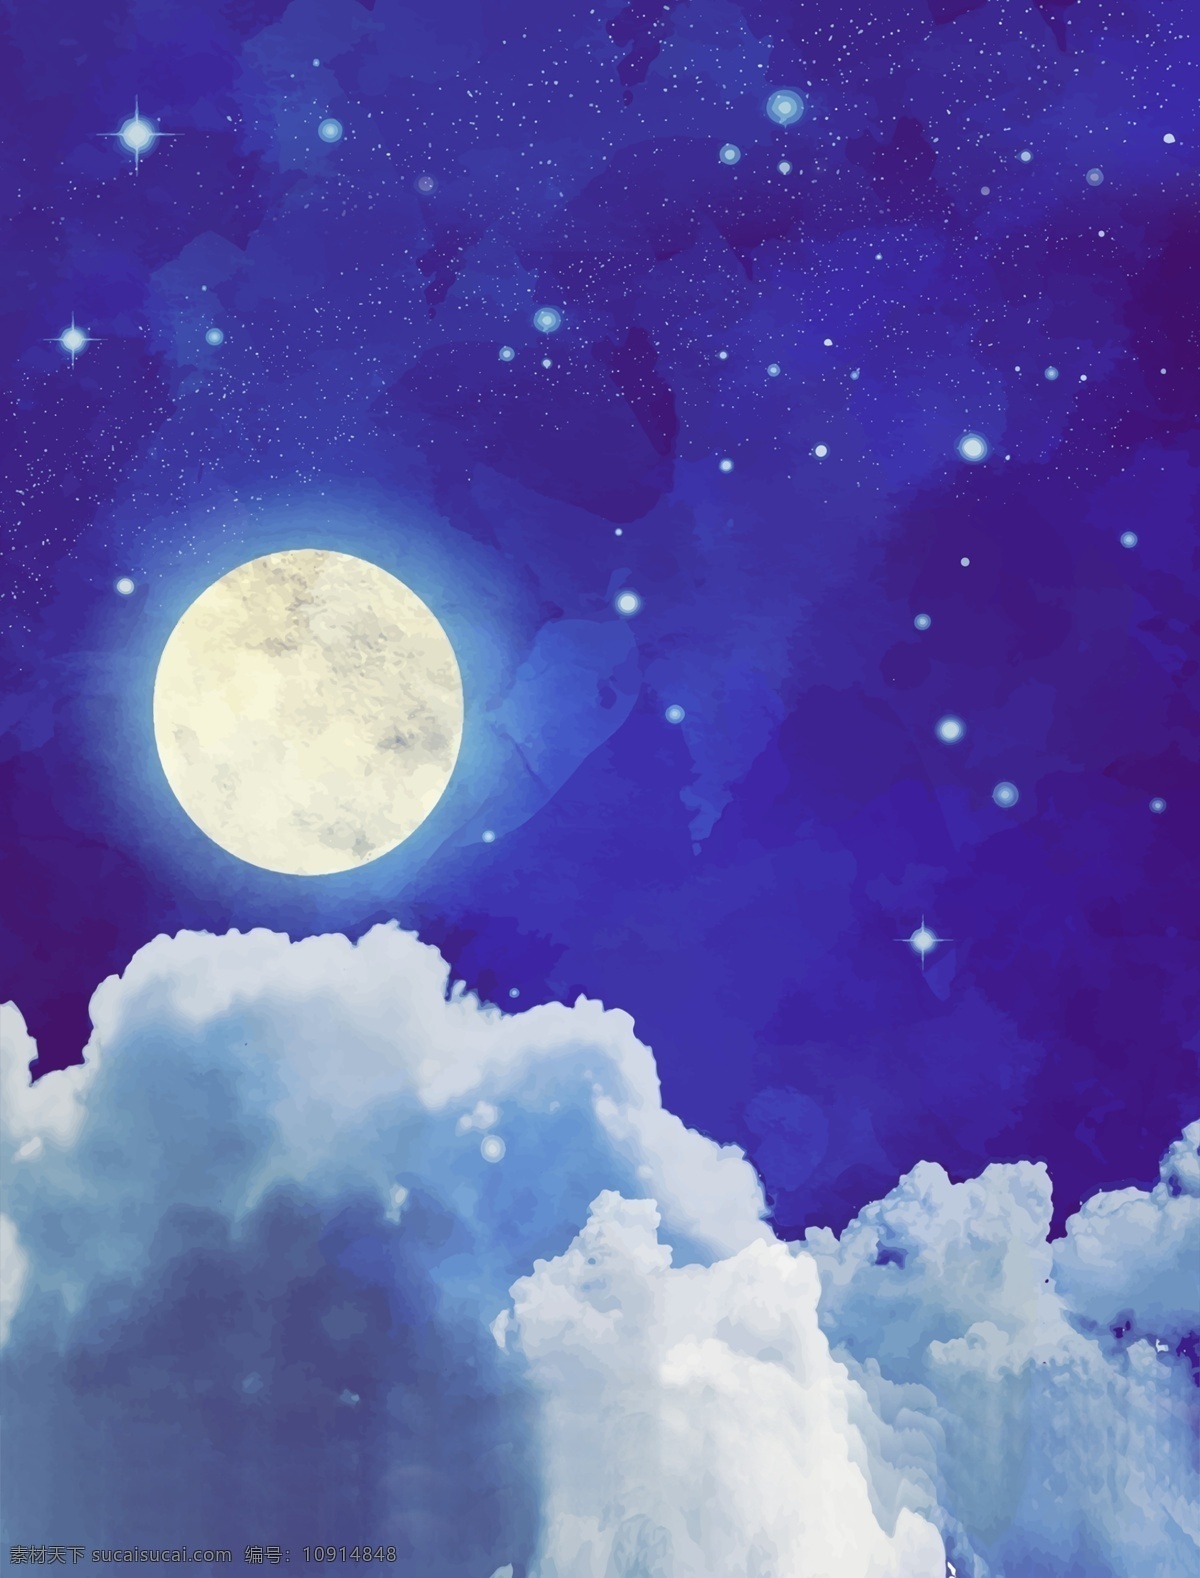 月圆 夜 梦幻 插画 装饰画 圆月 夜空 星星 简约 背景